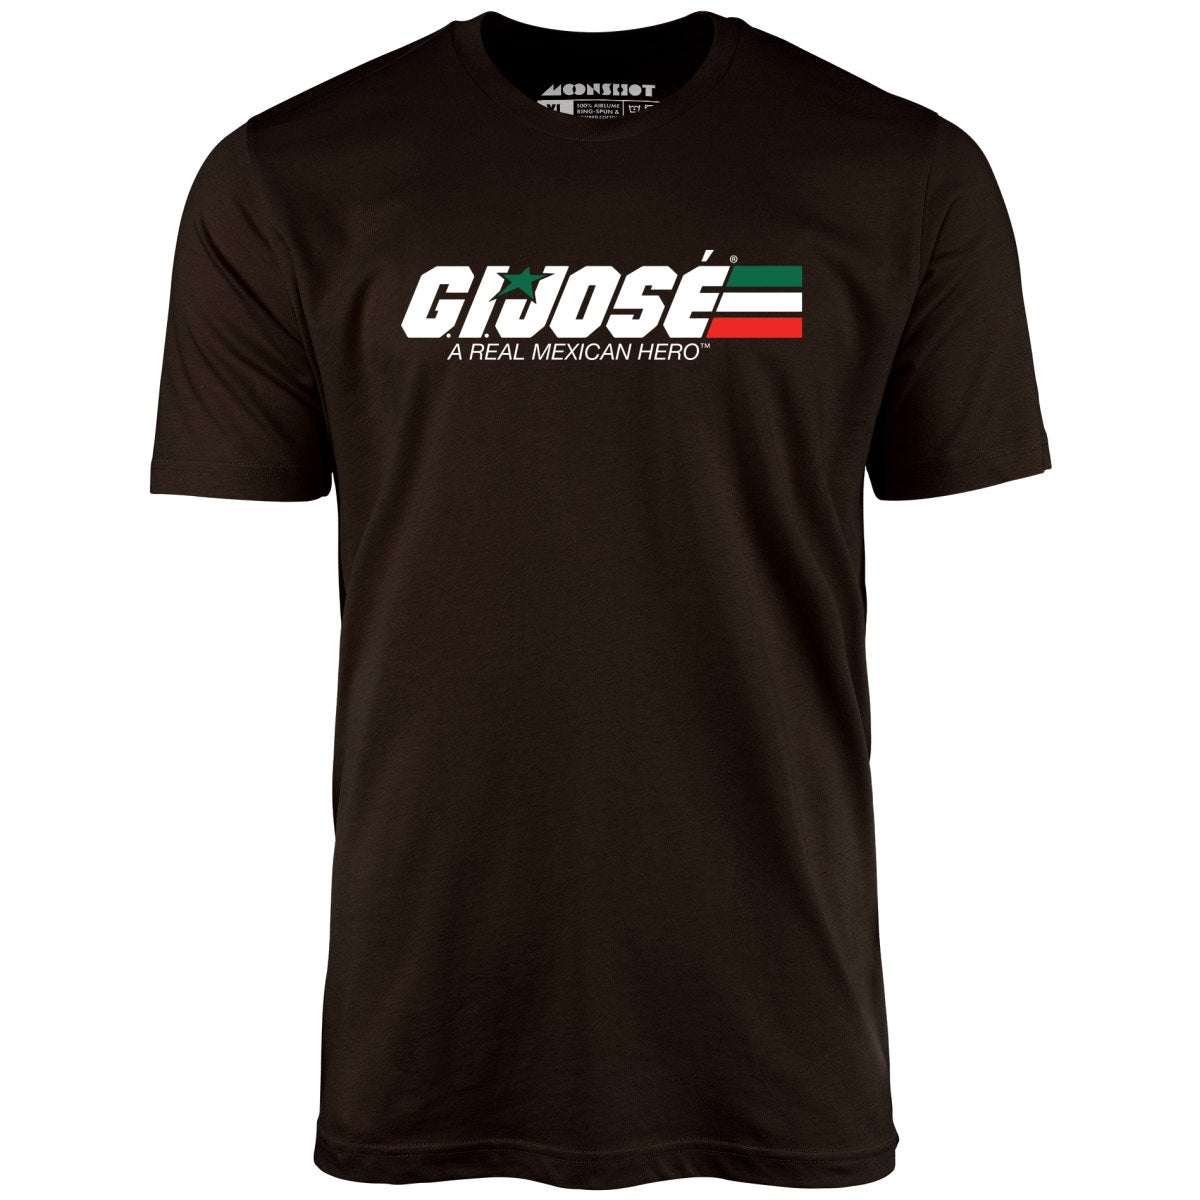 G.I. Jose - Unisex T-Shirt